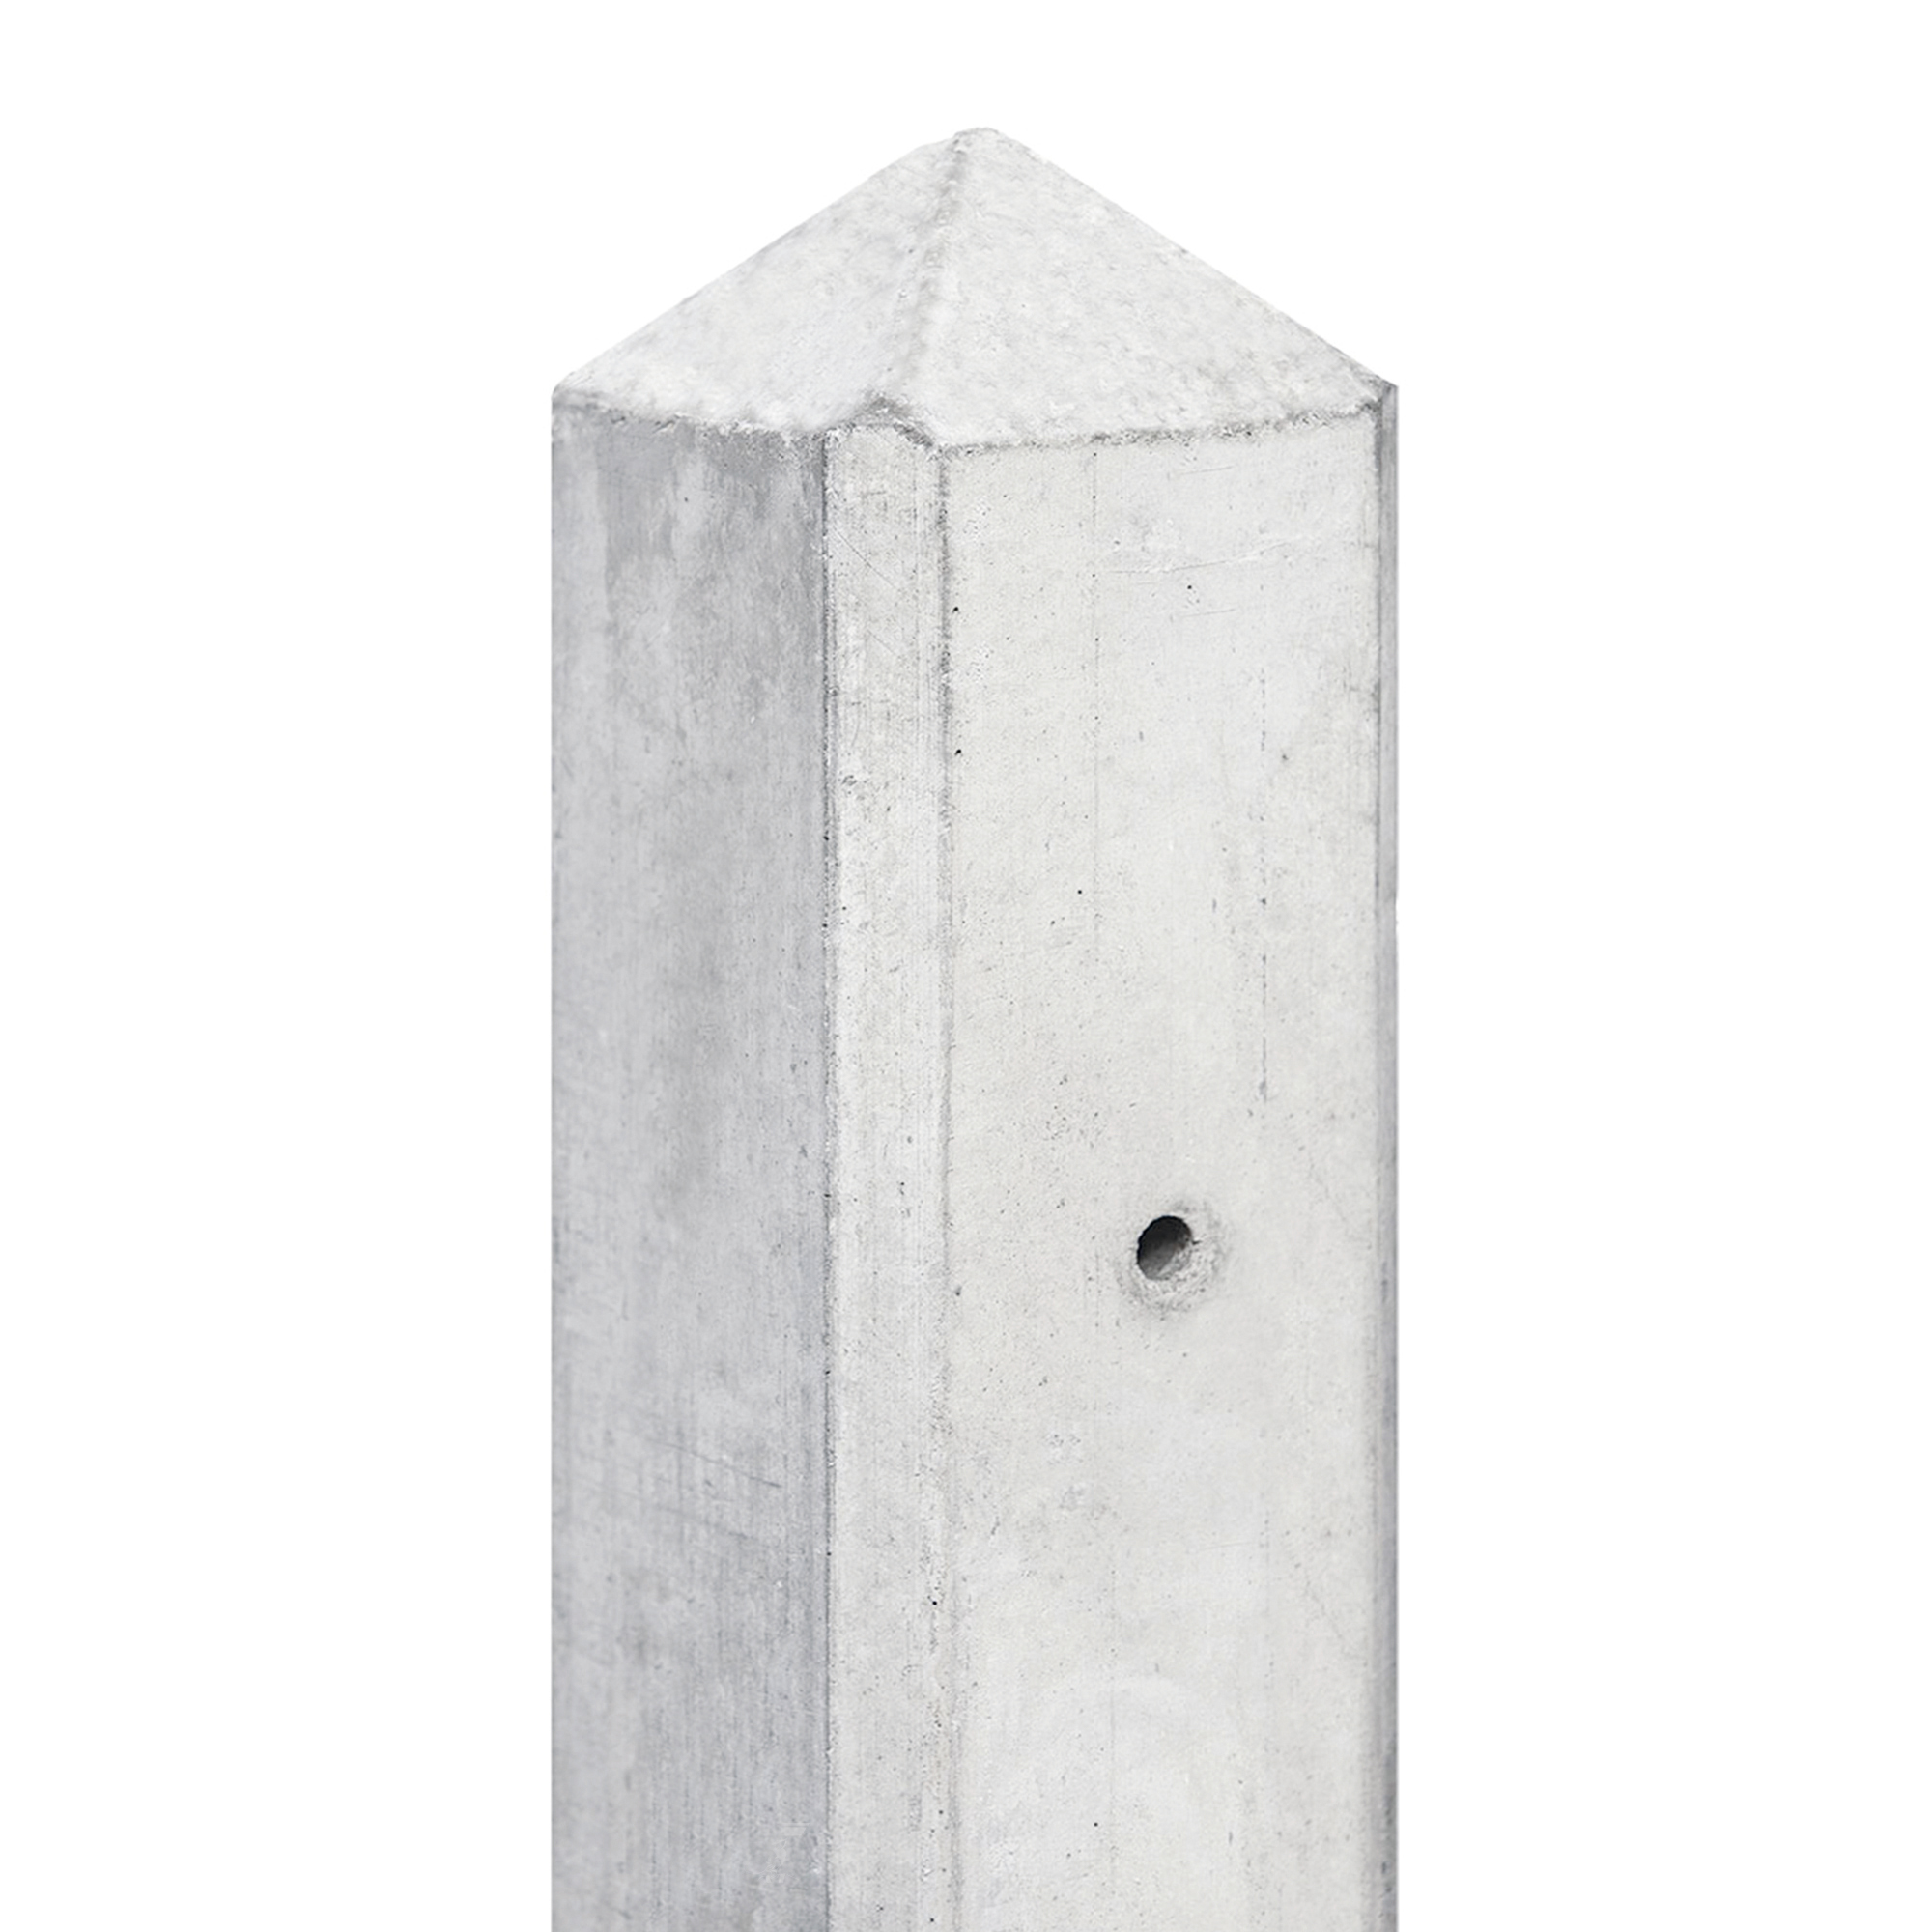 Berton©-motiefpaal Schie wit/grijs diamantkop 10 x 10 x 280 cm met kabeldoorvoer